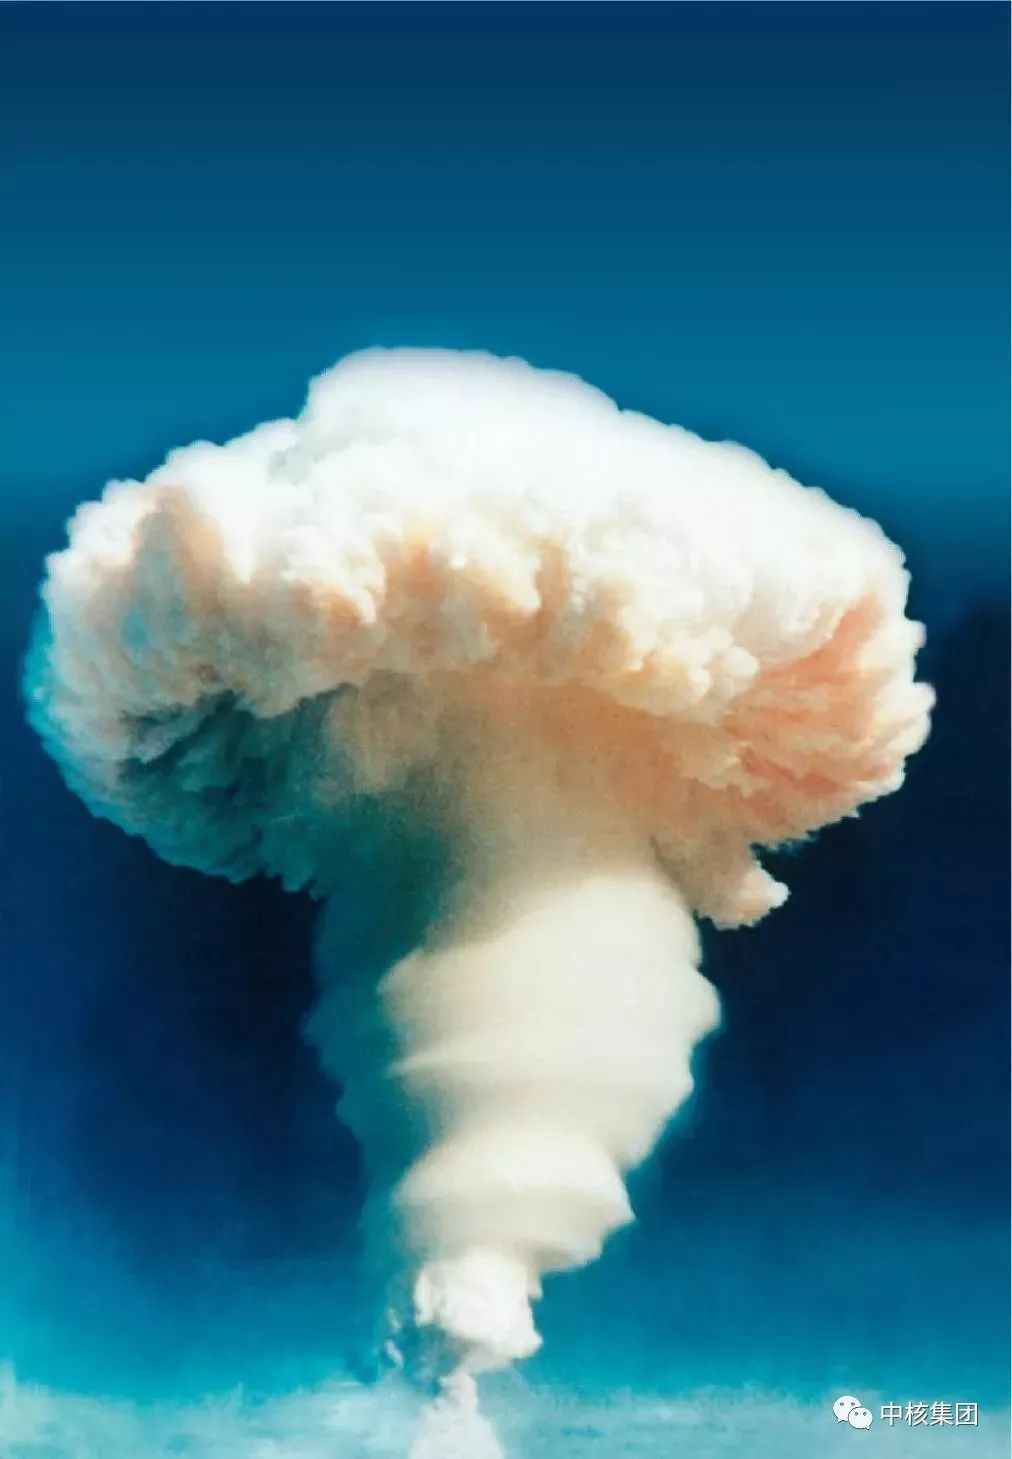 我国原子弹,氢弹,核潜艇研制珍贵画面曝光